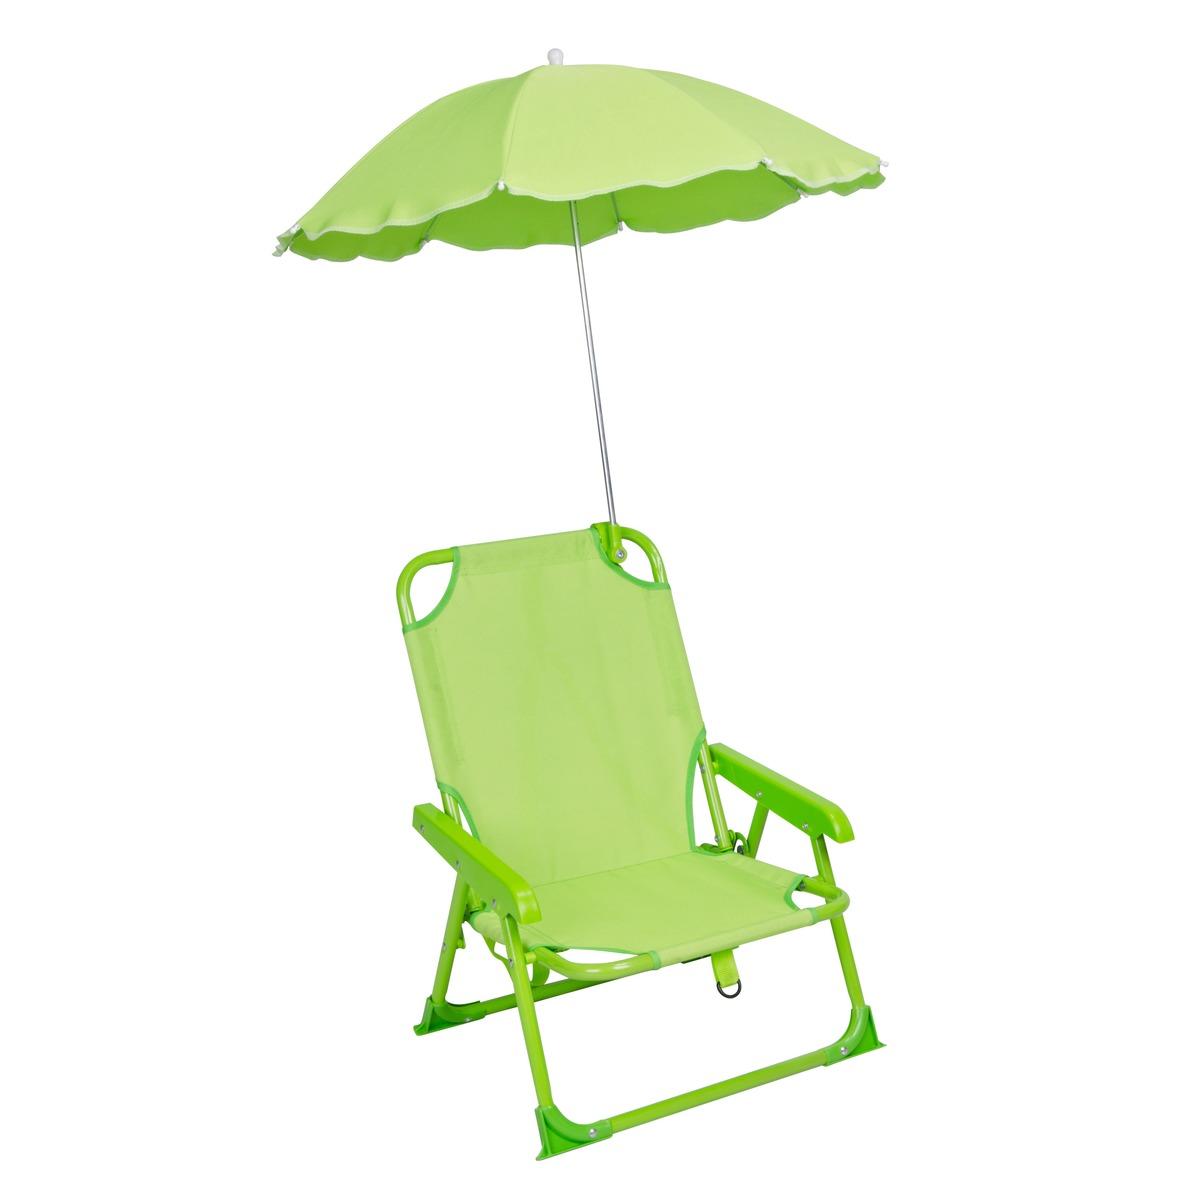 Chaise pliante avec parasol - 37 x 27 x H 46 cm - Vert